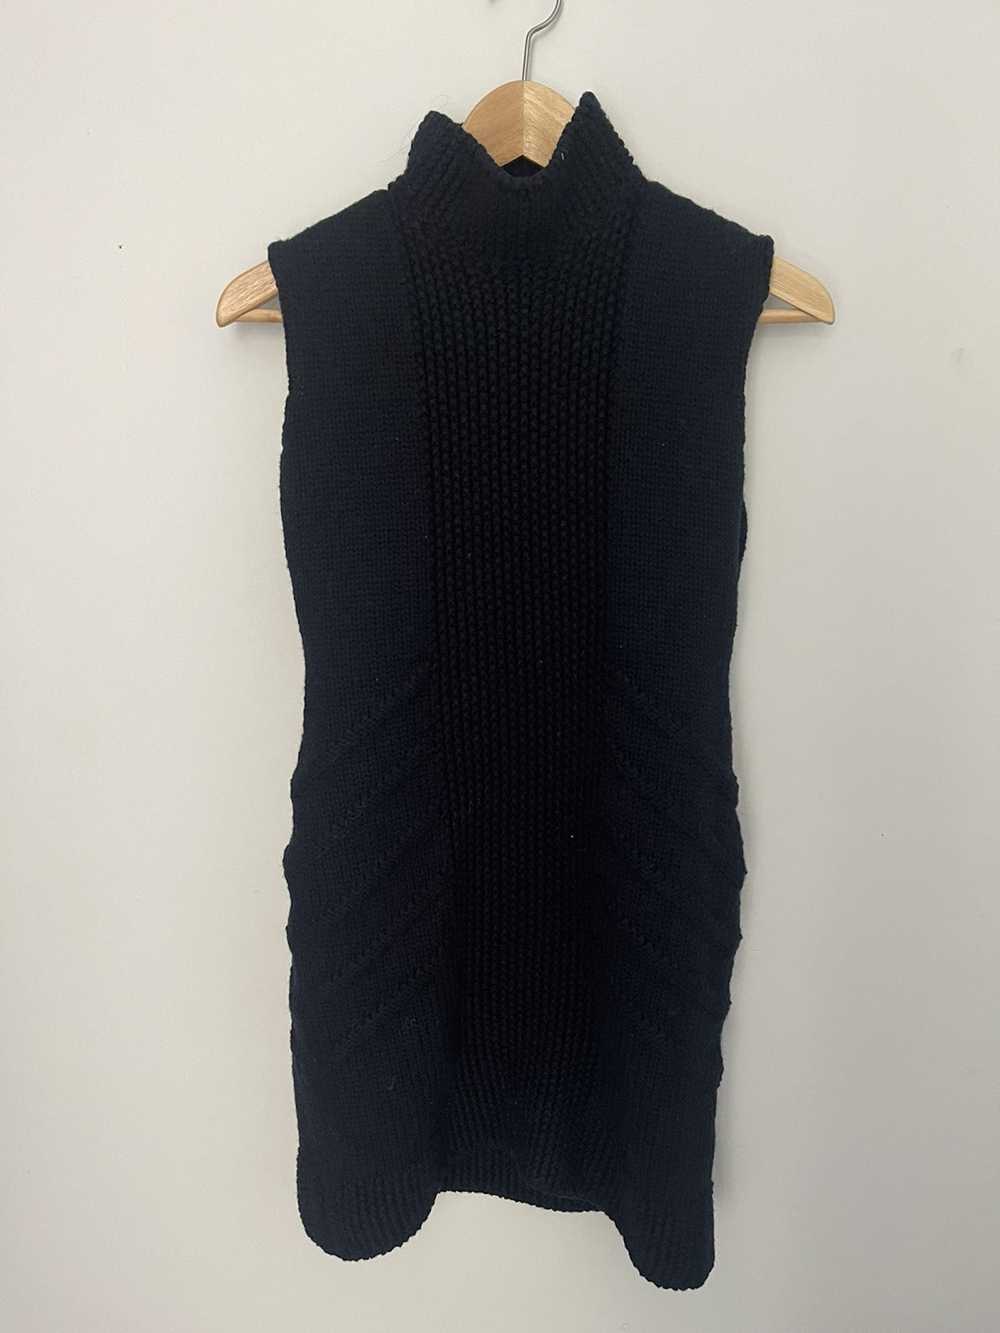 Prada Prada Knitted Sleeveless Sweater Dress - image 1